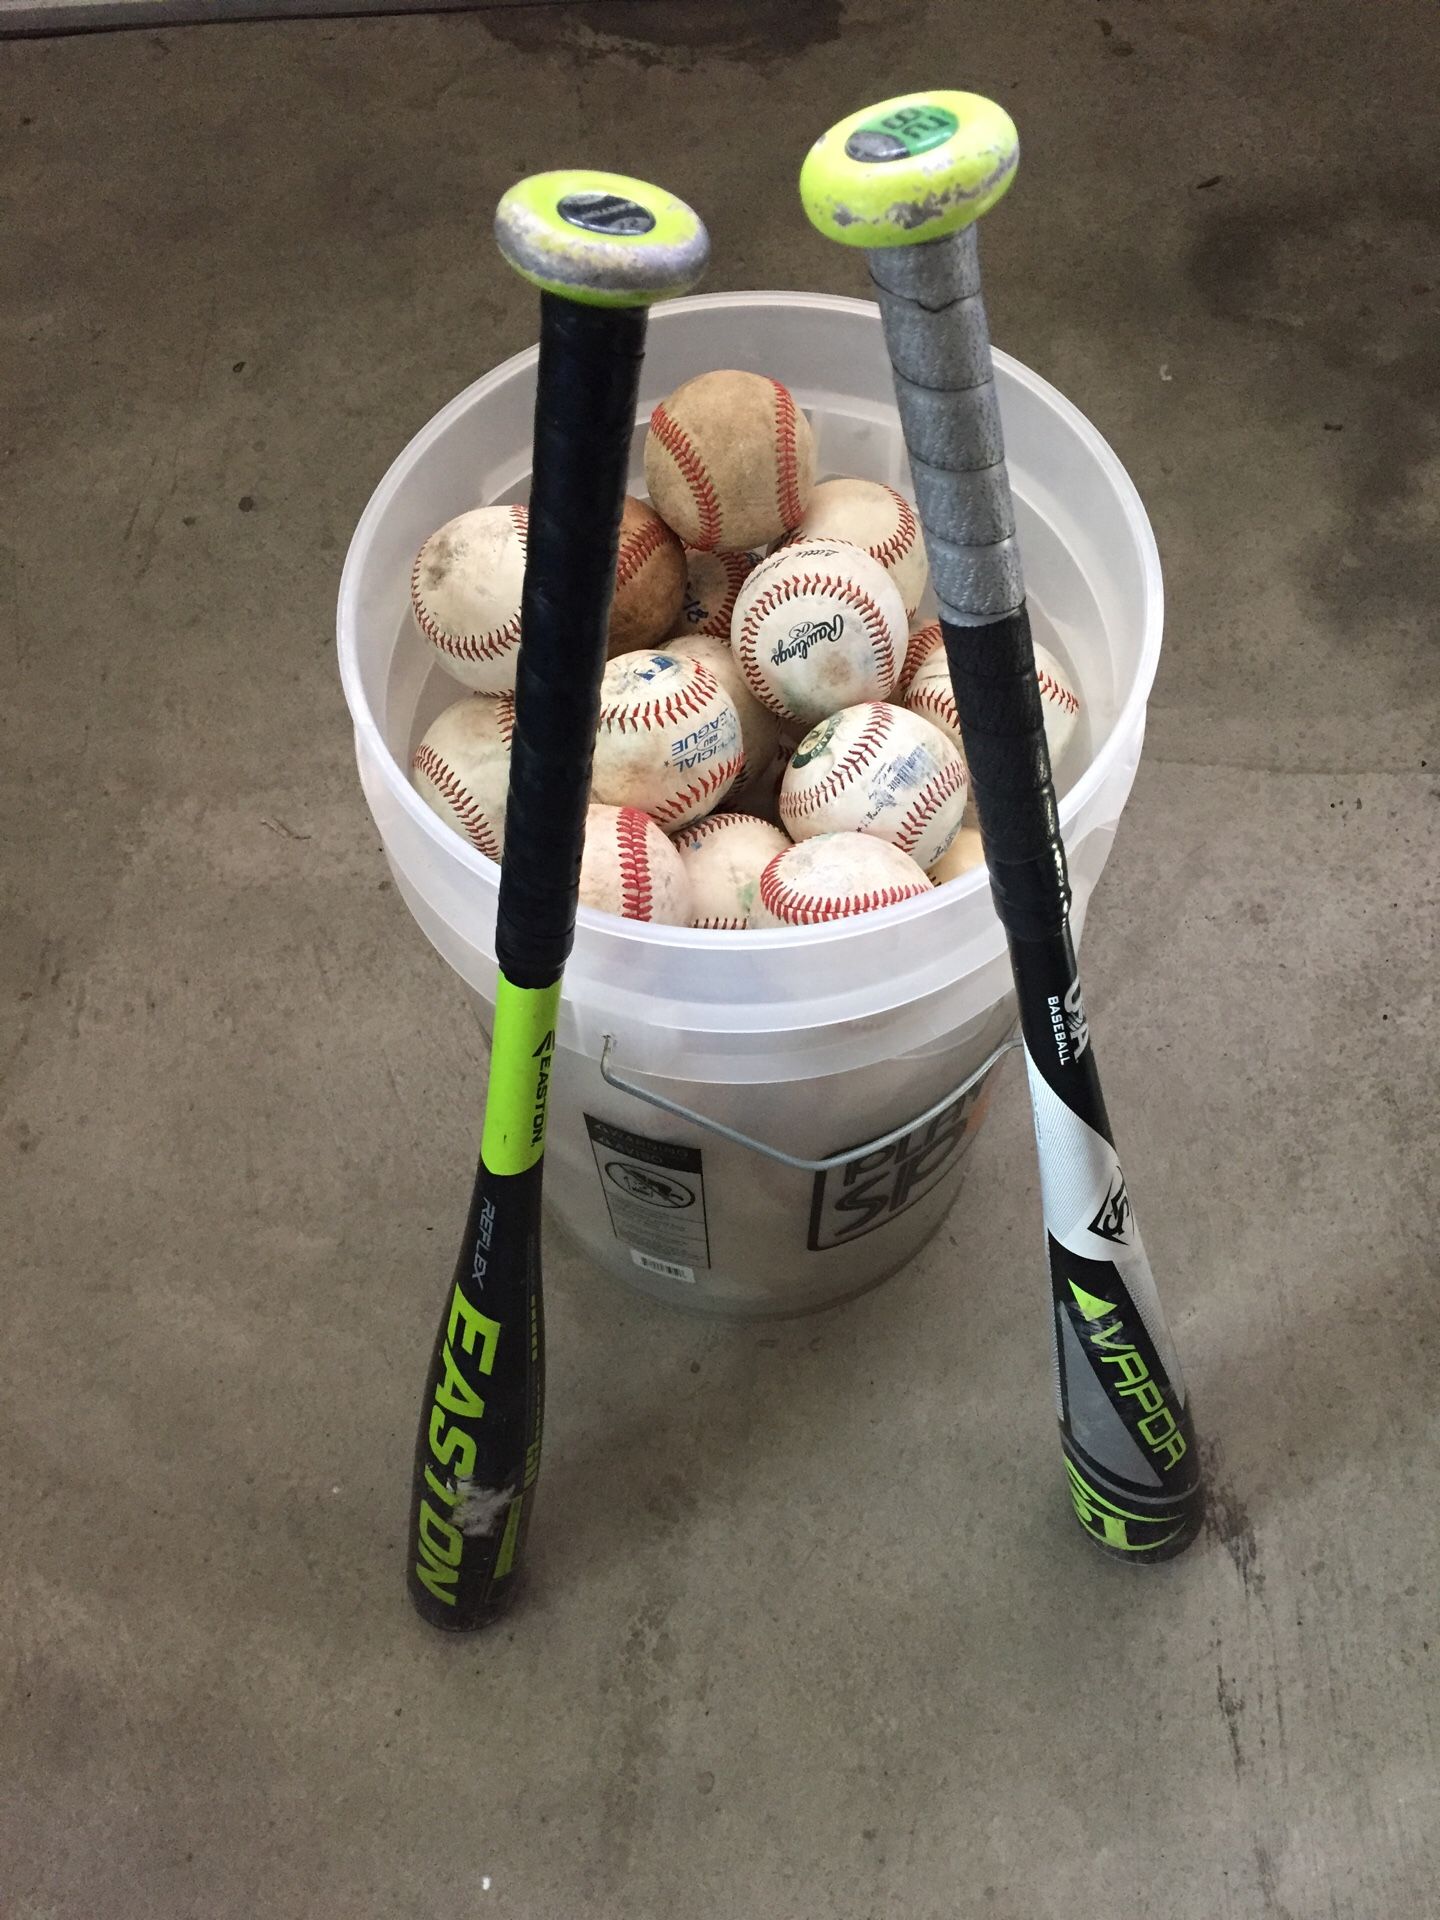 Baseball bats and balls